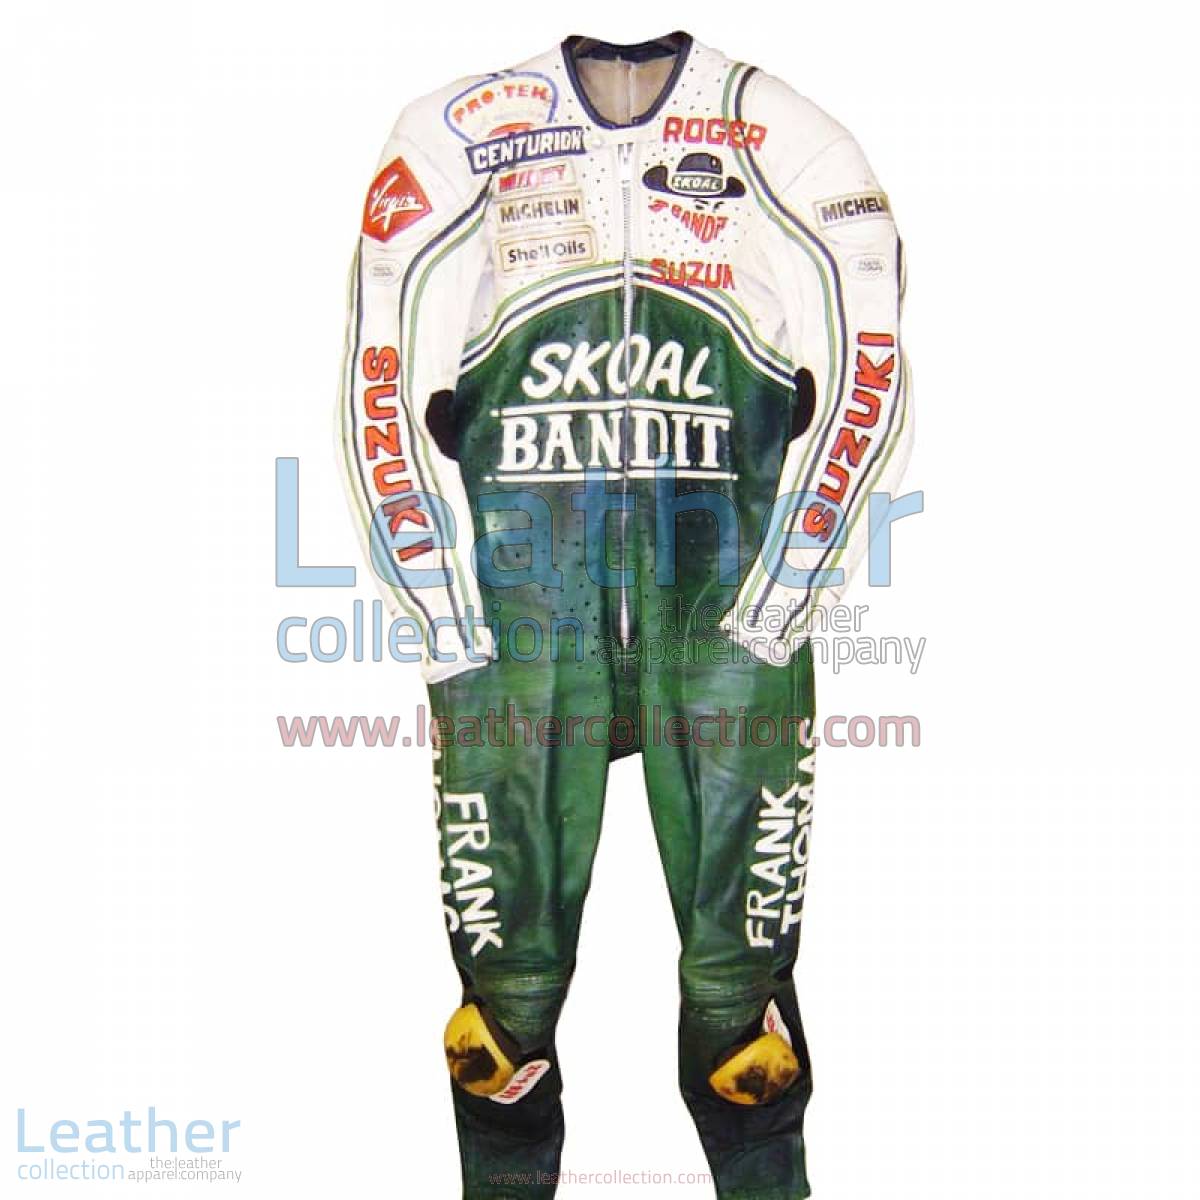 Roger Marshall Suzuki GP 1987 Leather Suit